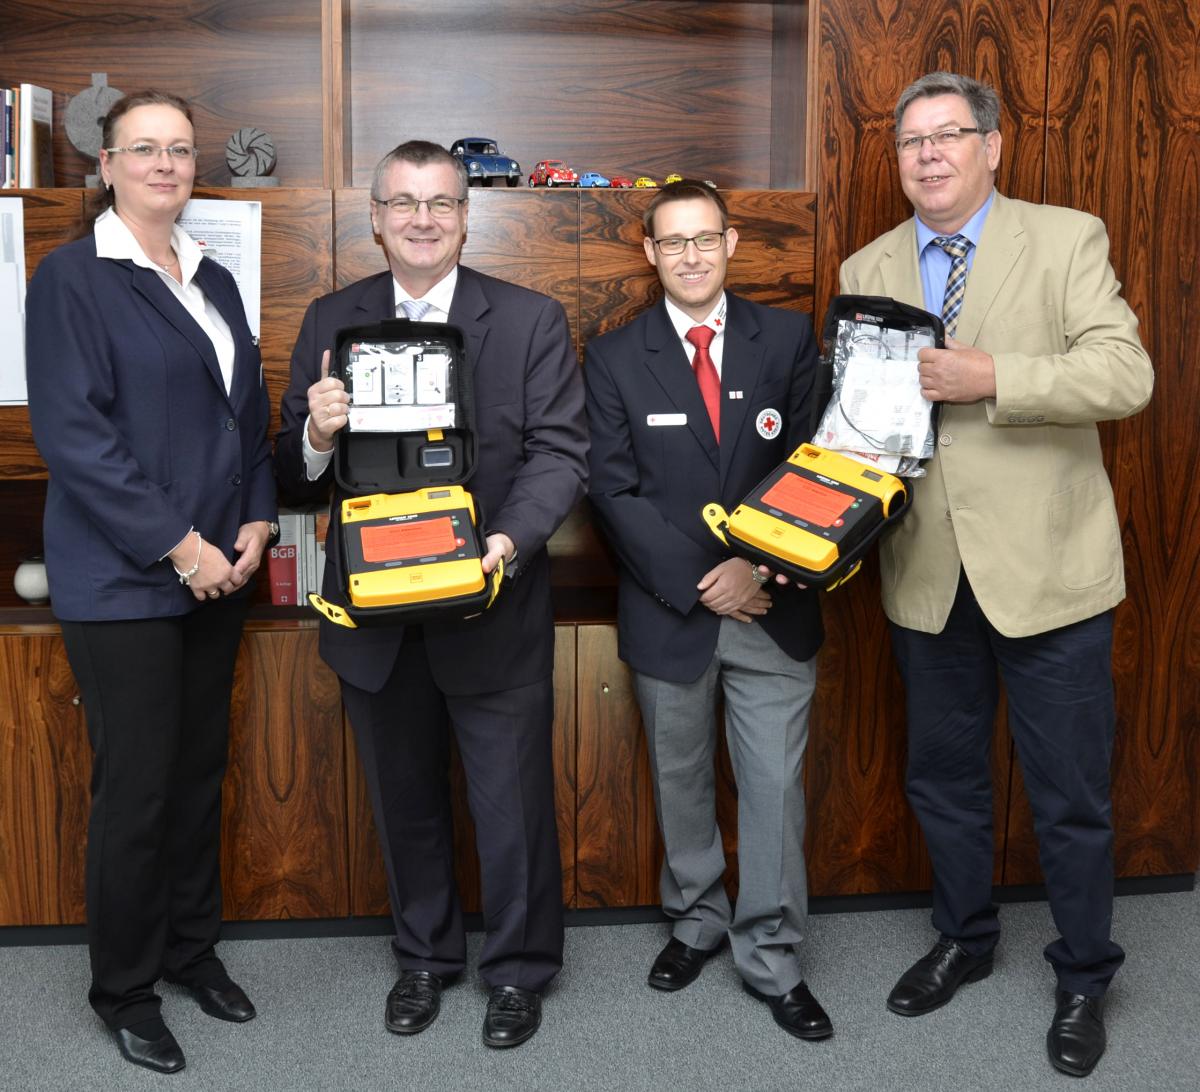 Landrat Dr. Alexander Saftig (2.v.l.) freut sich, dass er den Schnell-Einsatz-Gruppen zwei weitere Defibrillatoren übergeben kann